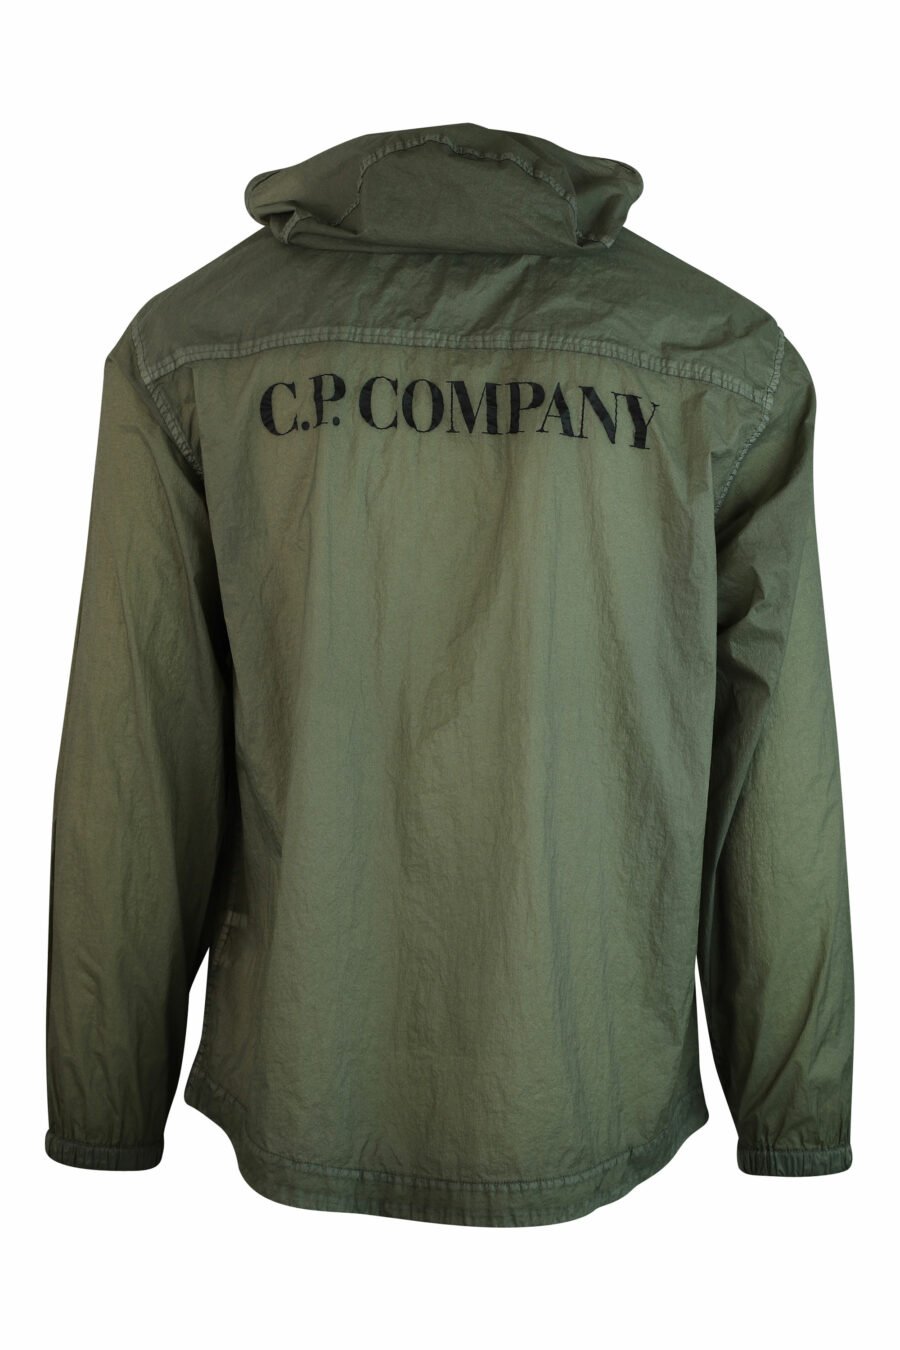 Veste militaire verte avec capuche et logo - IMG 1115